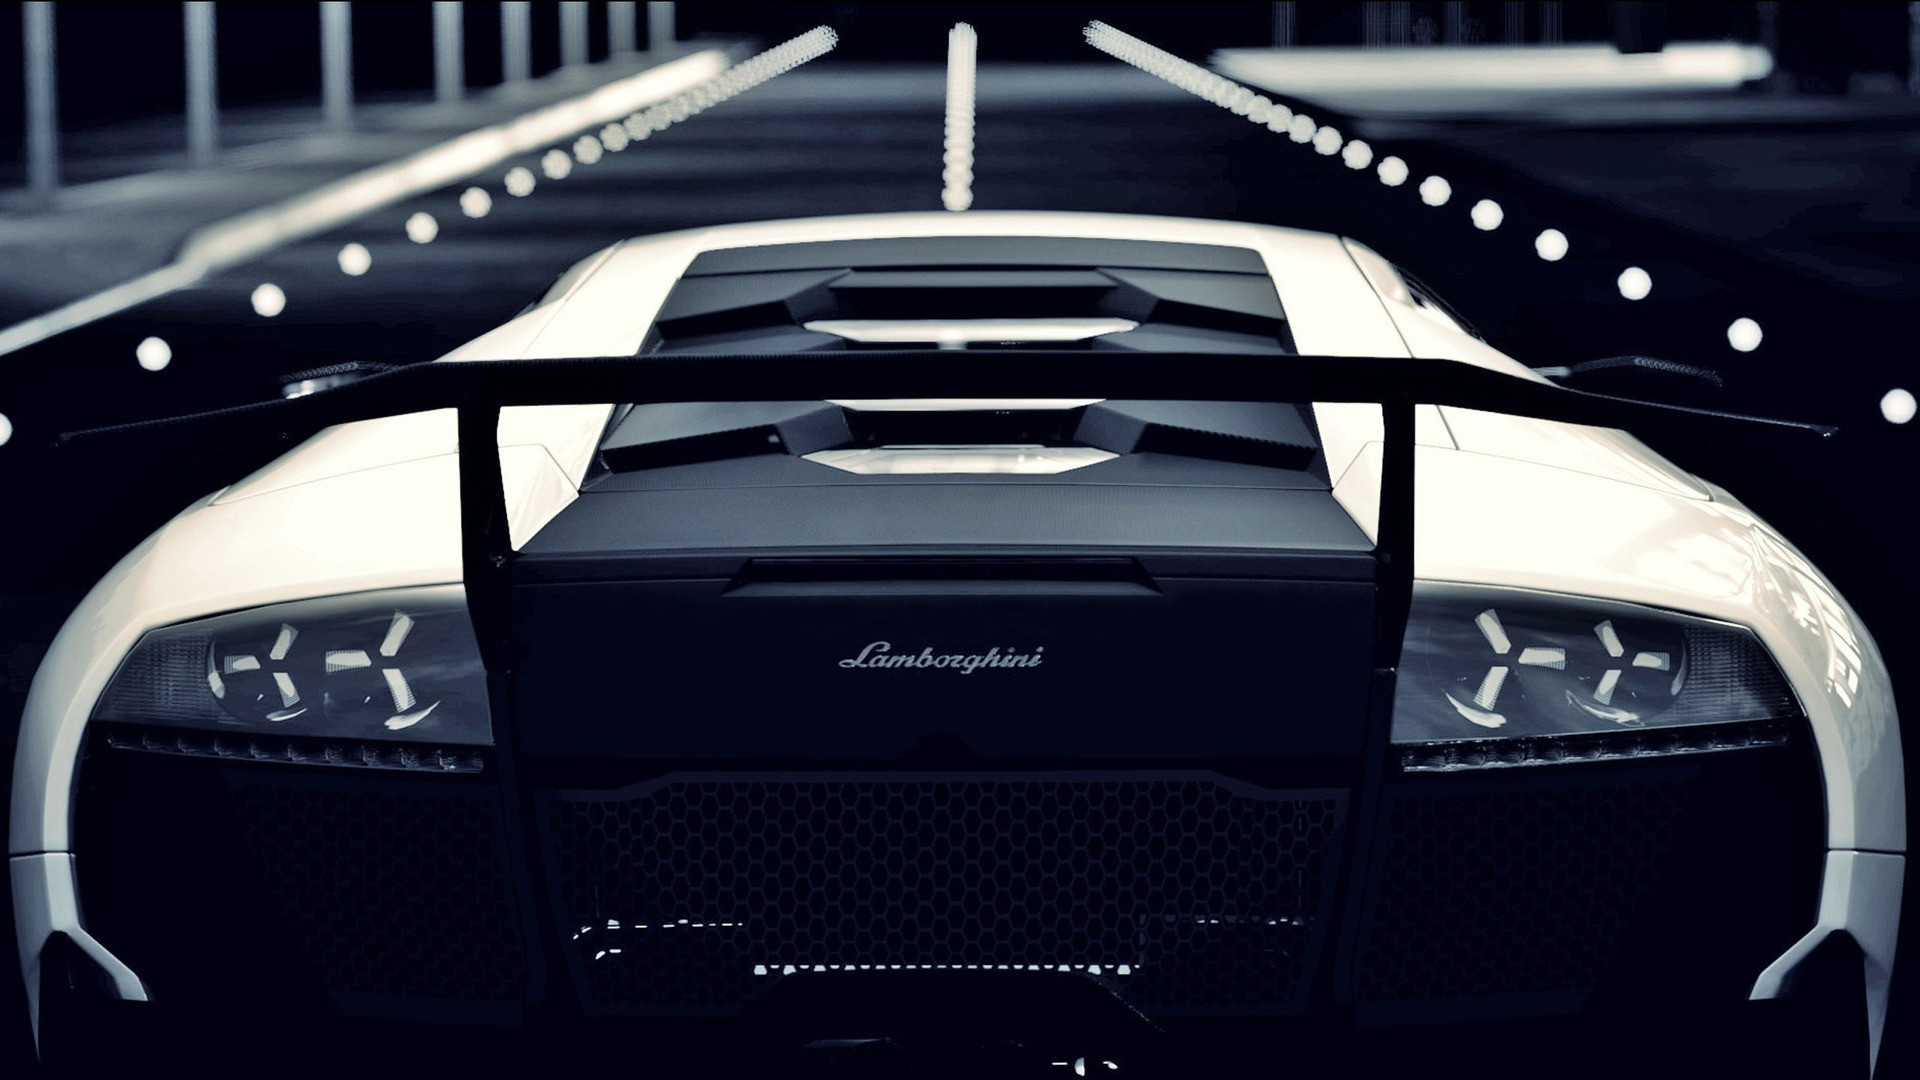 1920x1080 Lamborghini Murcielago Sports Car at http://www.hdwallcloud.com/lamborghini